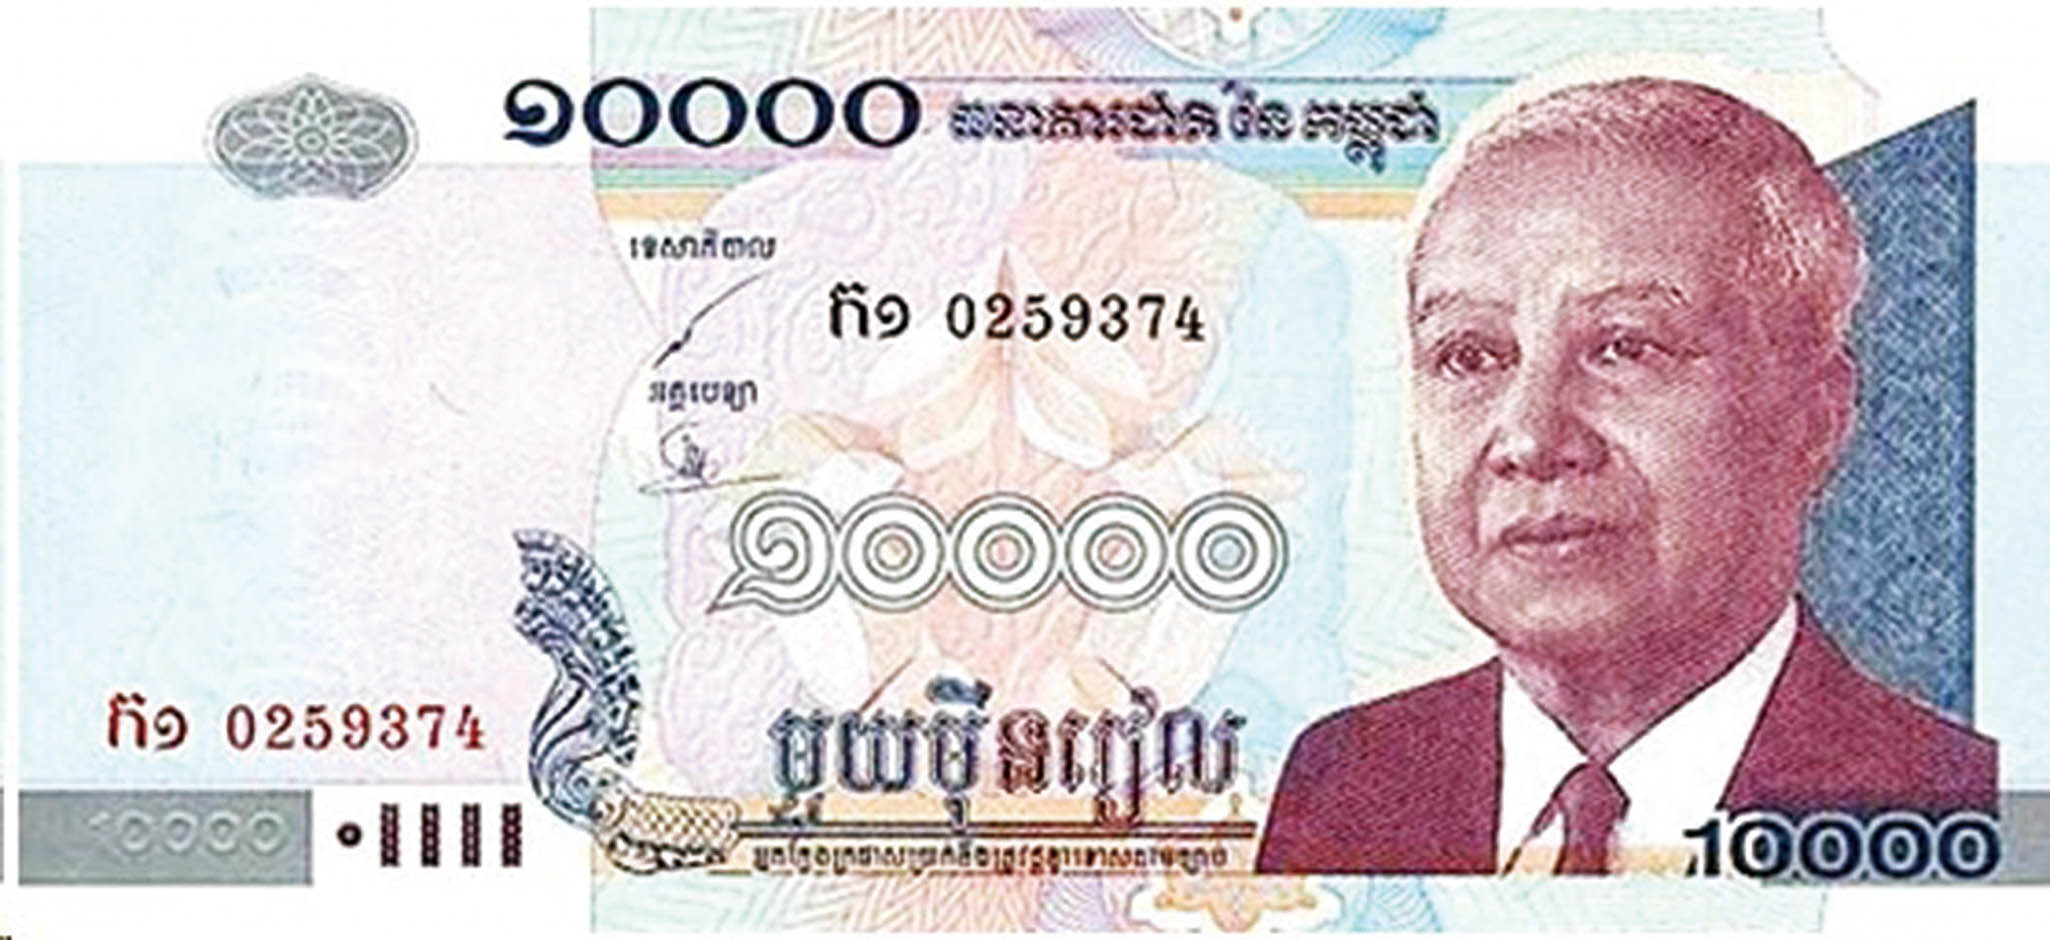 500萬日圓驚變五萬柬幣